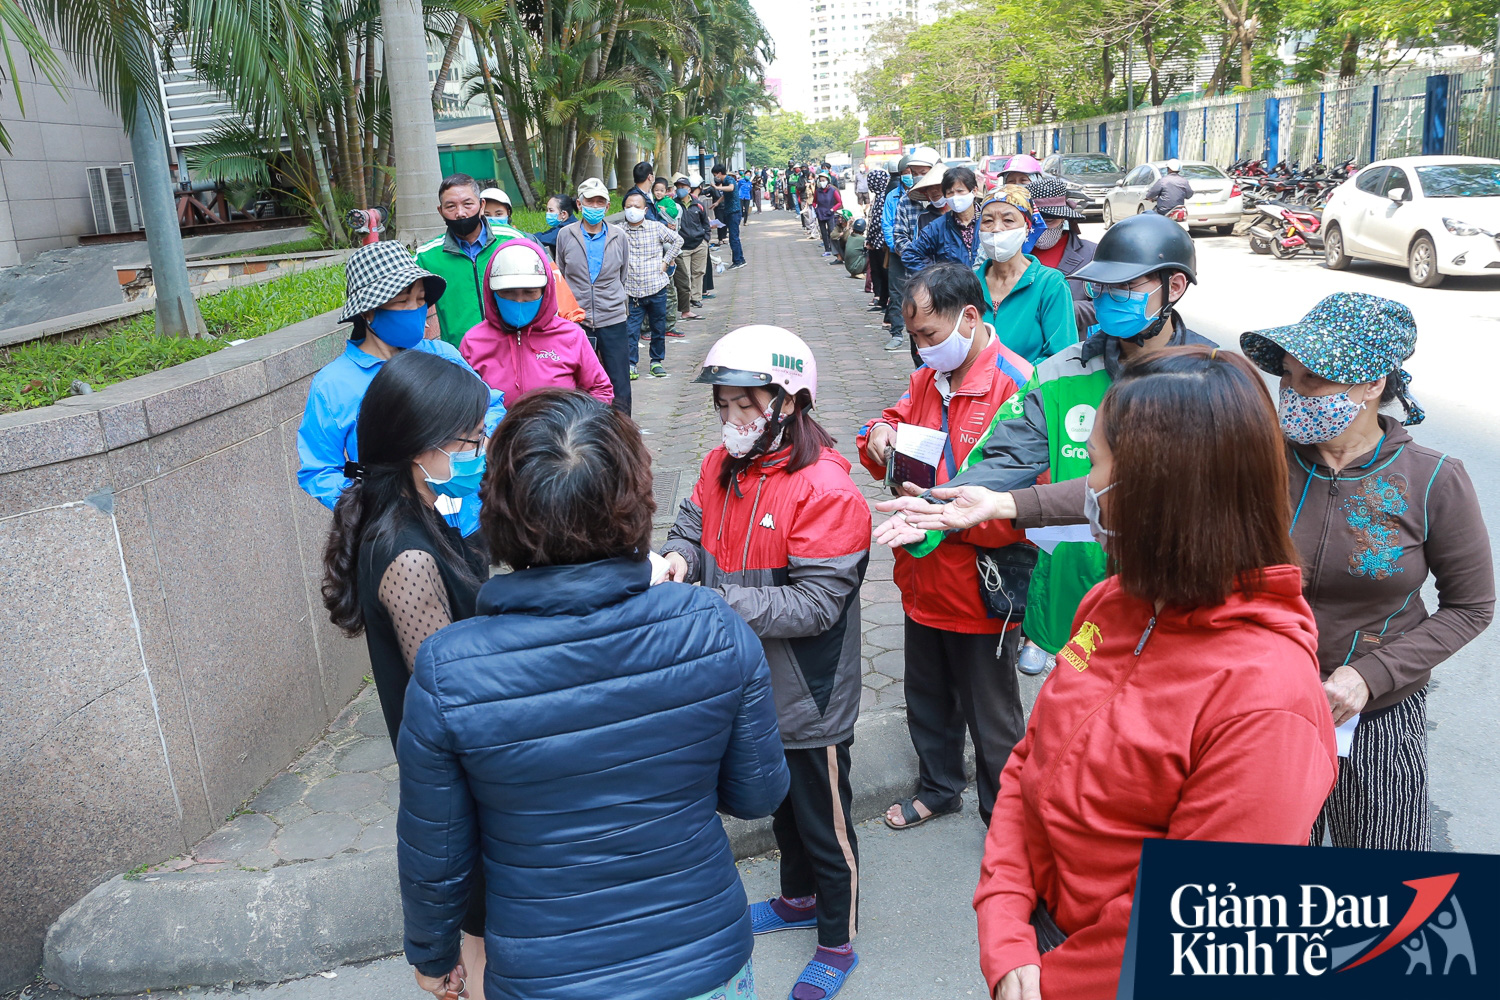 Hàng trăm người dân Hà Nội xếp hàng dài, chờ tới lượt để nhận nhu yếu phẩm tại siêu thị hạnh phúc - Ảnh 5.